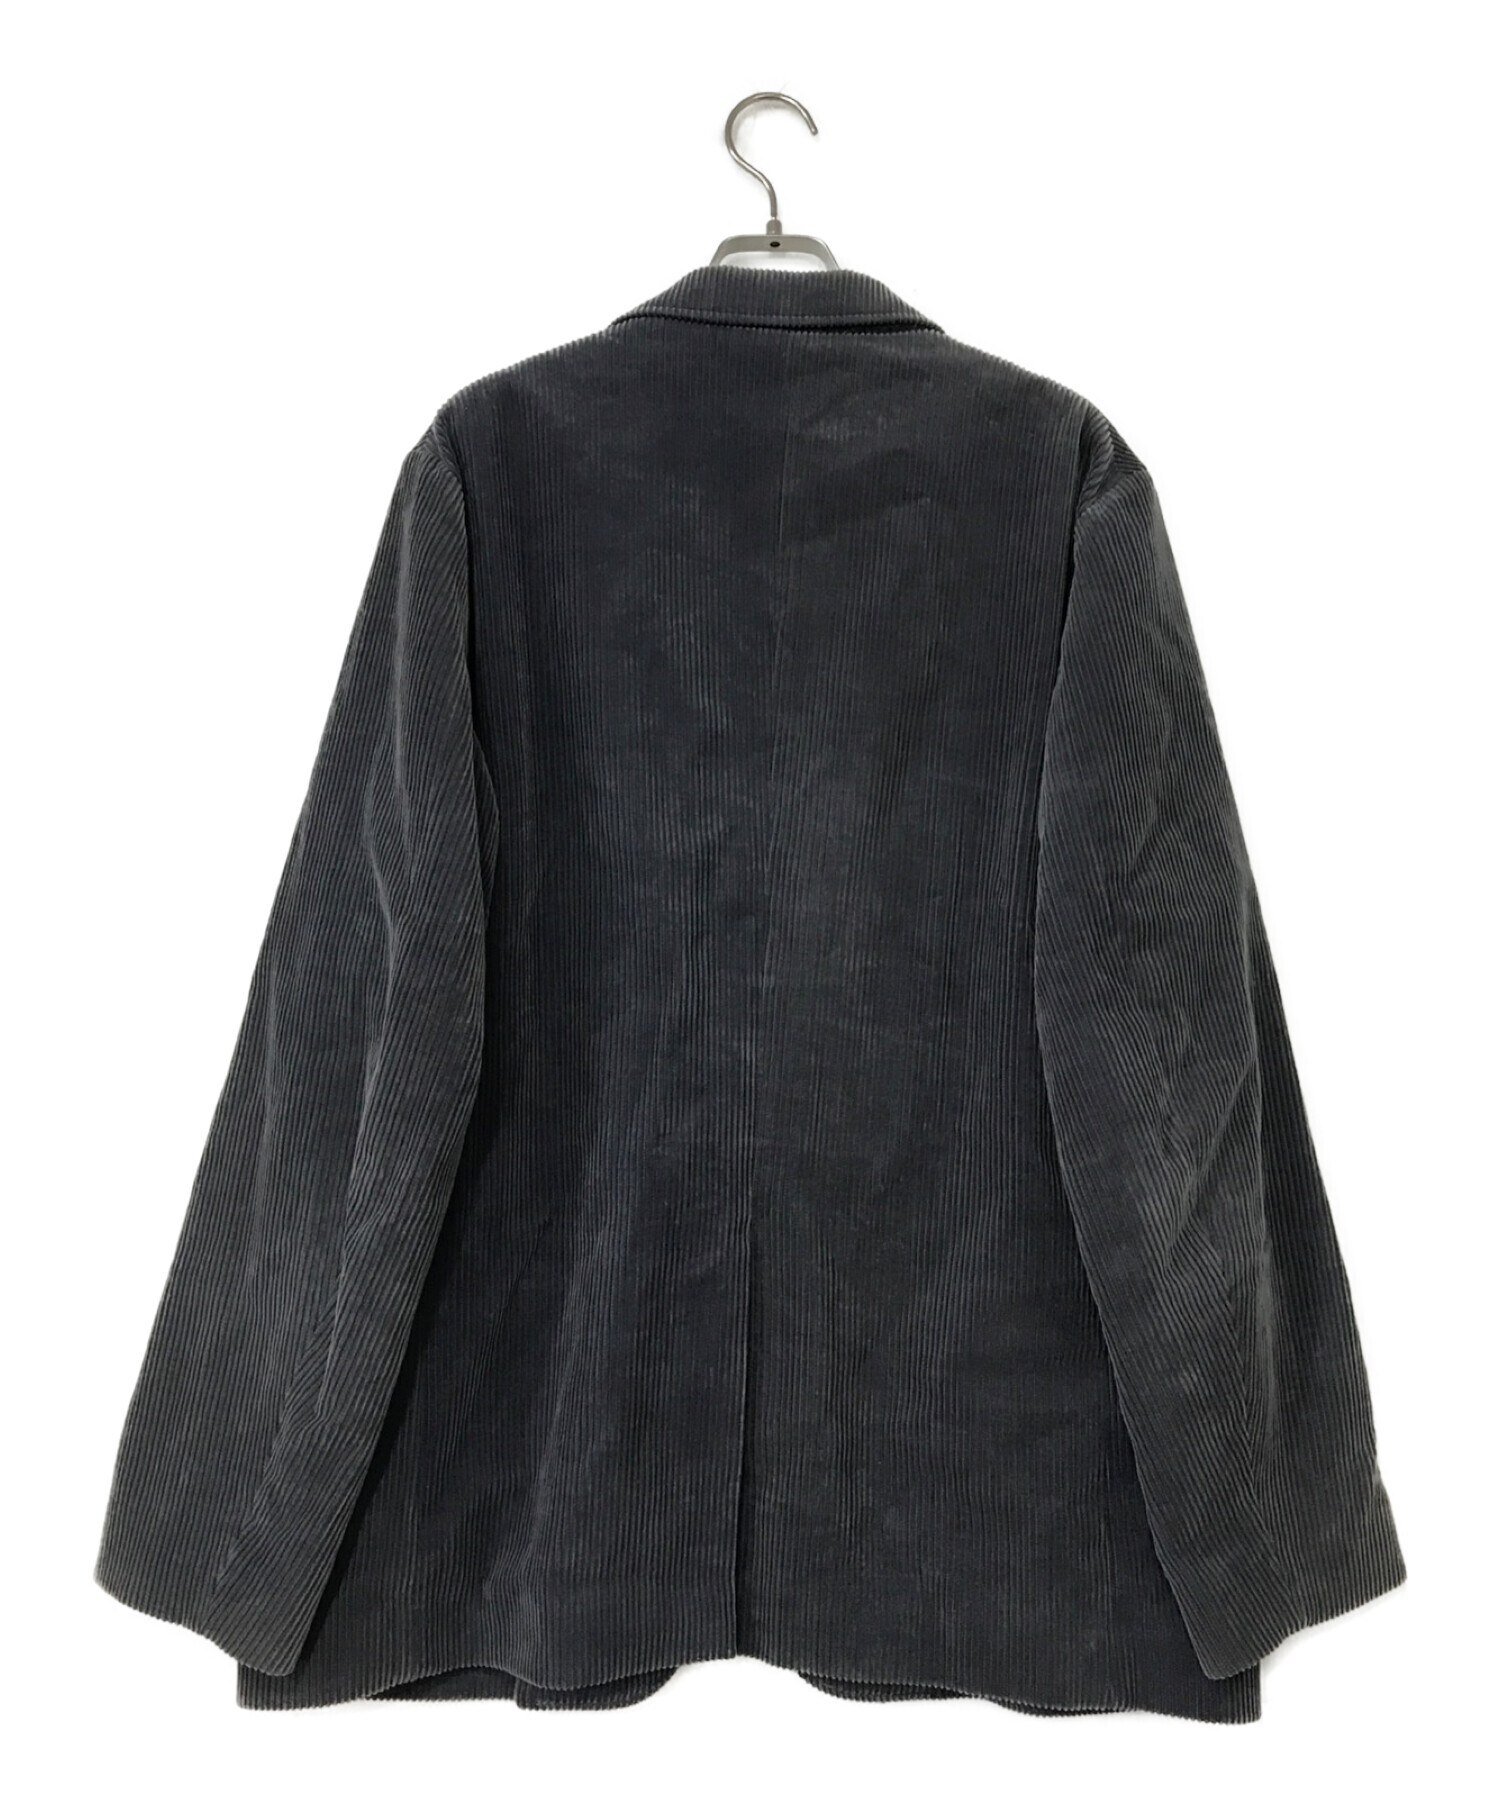 AURALEE 2019aw washed linen jacket black